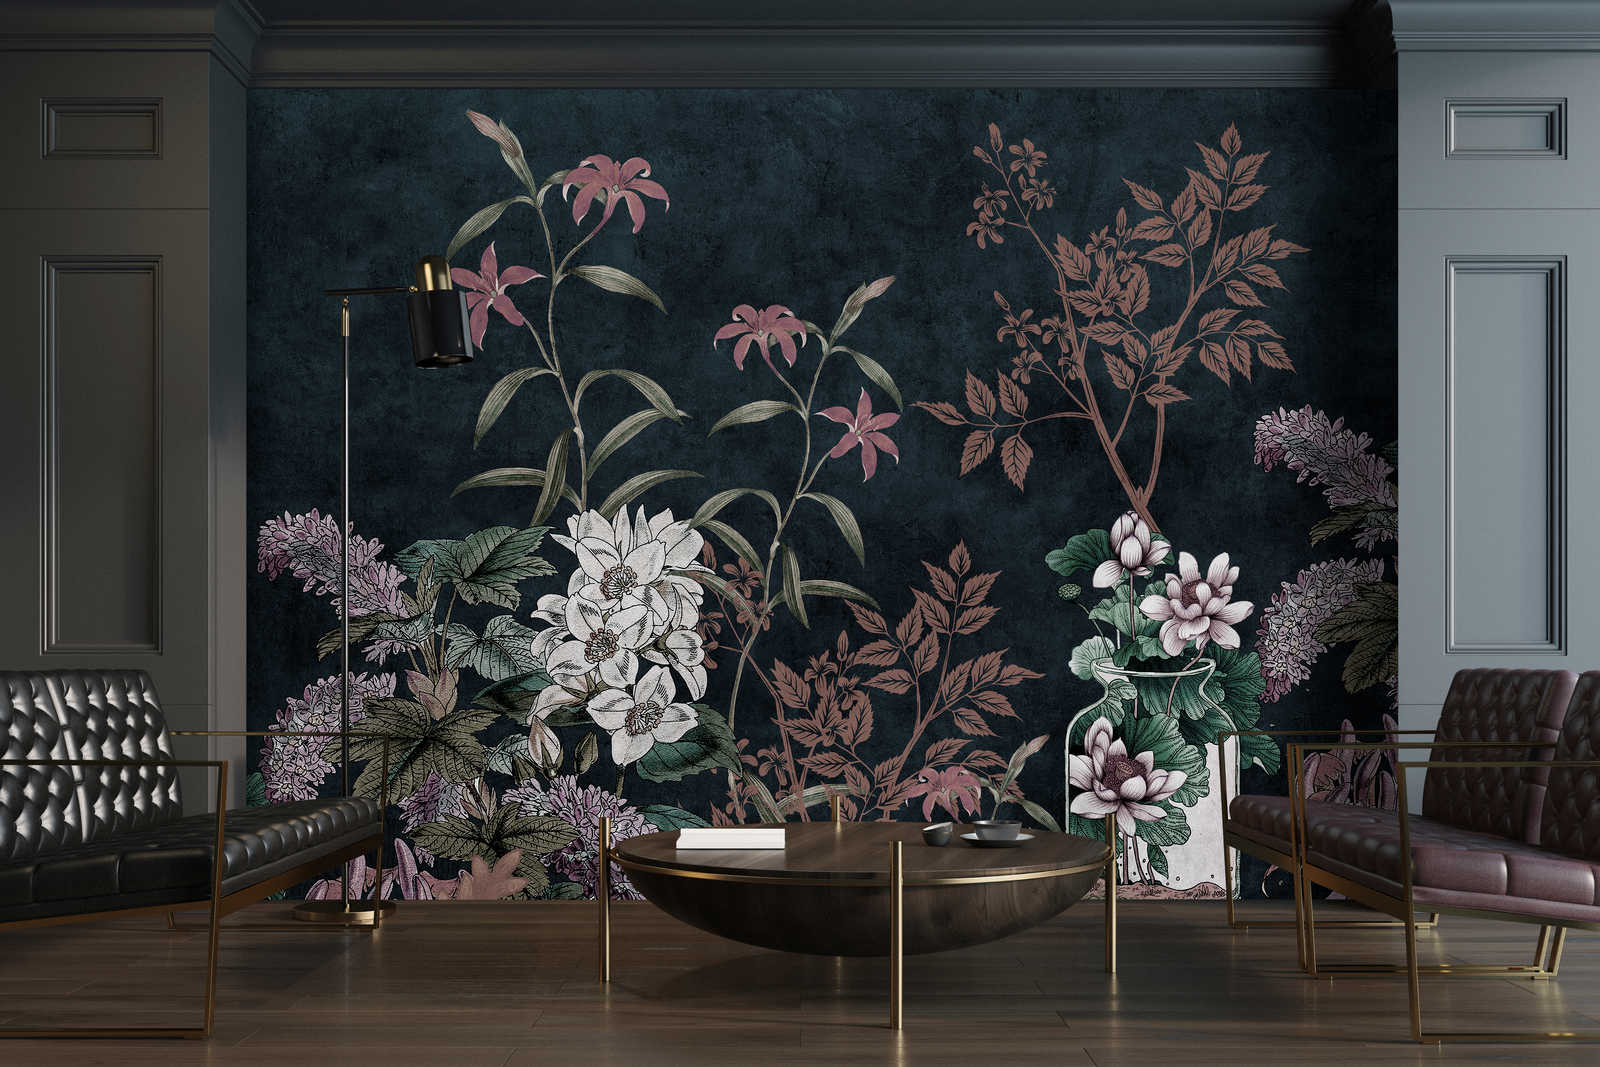             Dark Room 2 - Black Wallpaper Botanical Pattern Pink
        